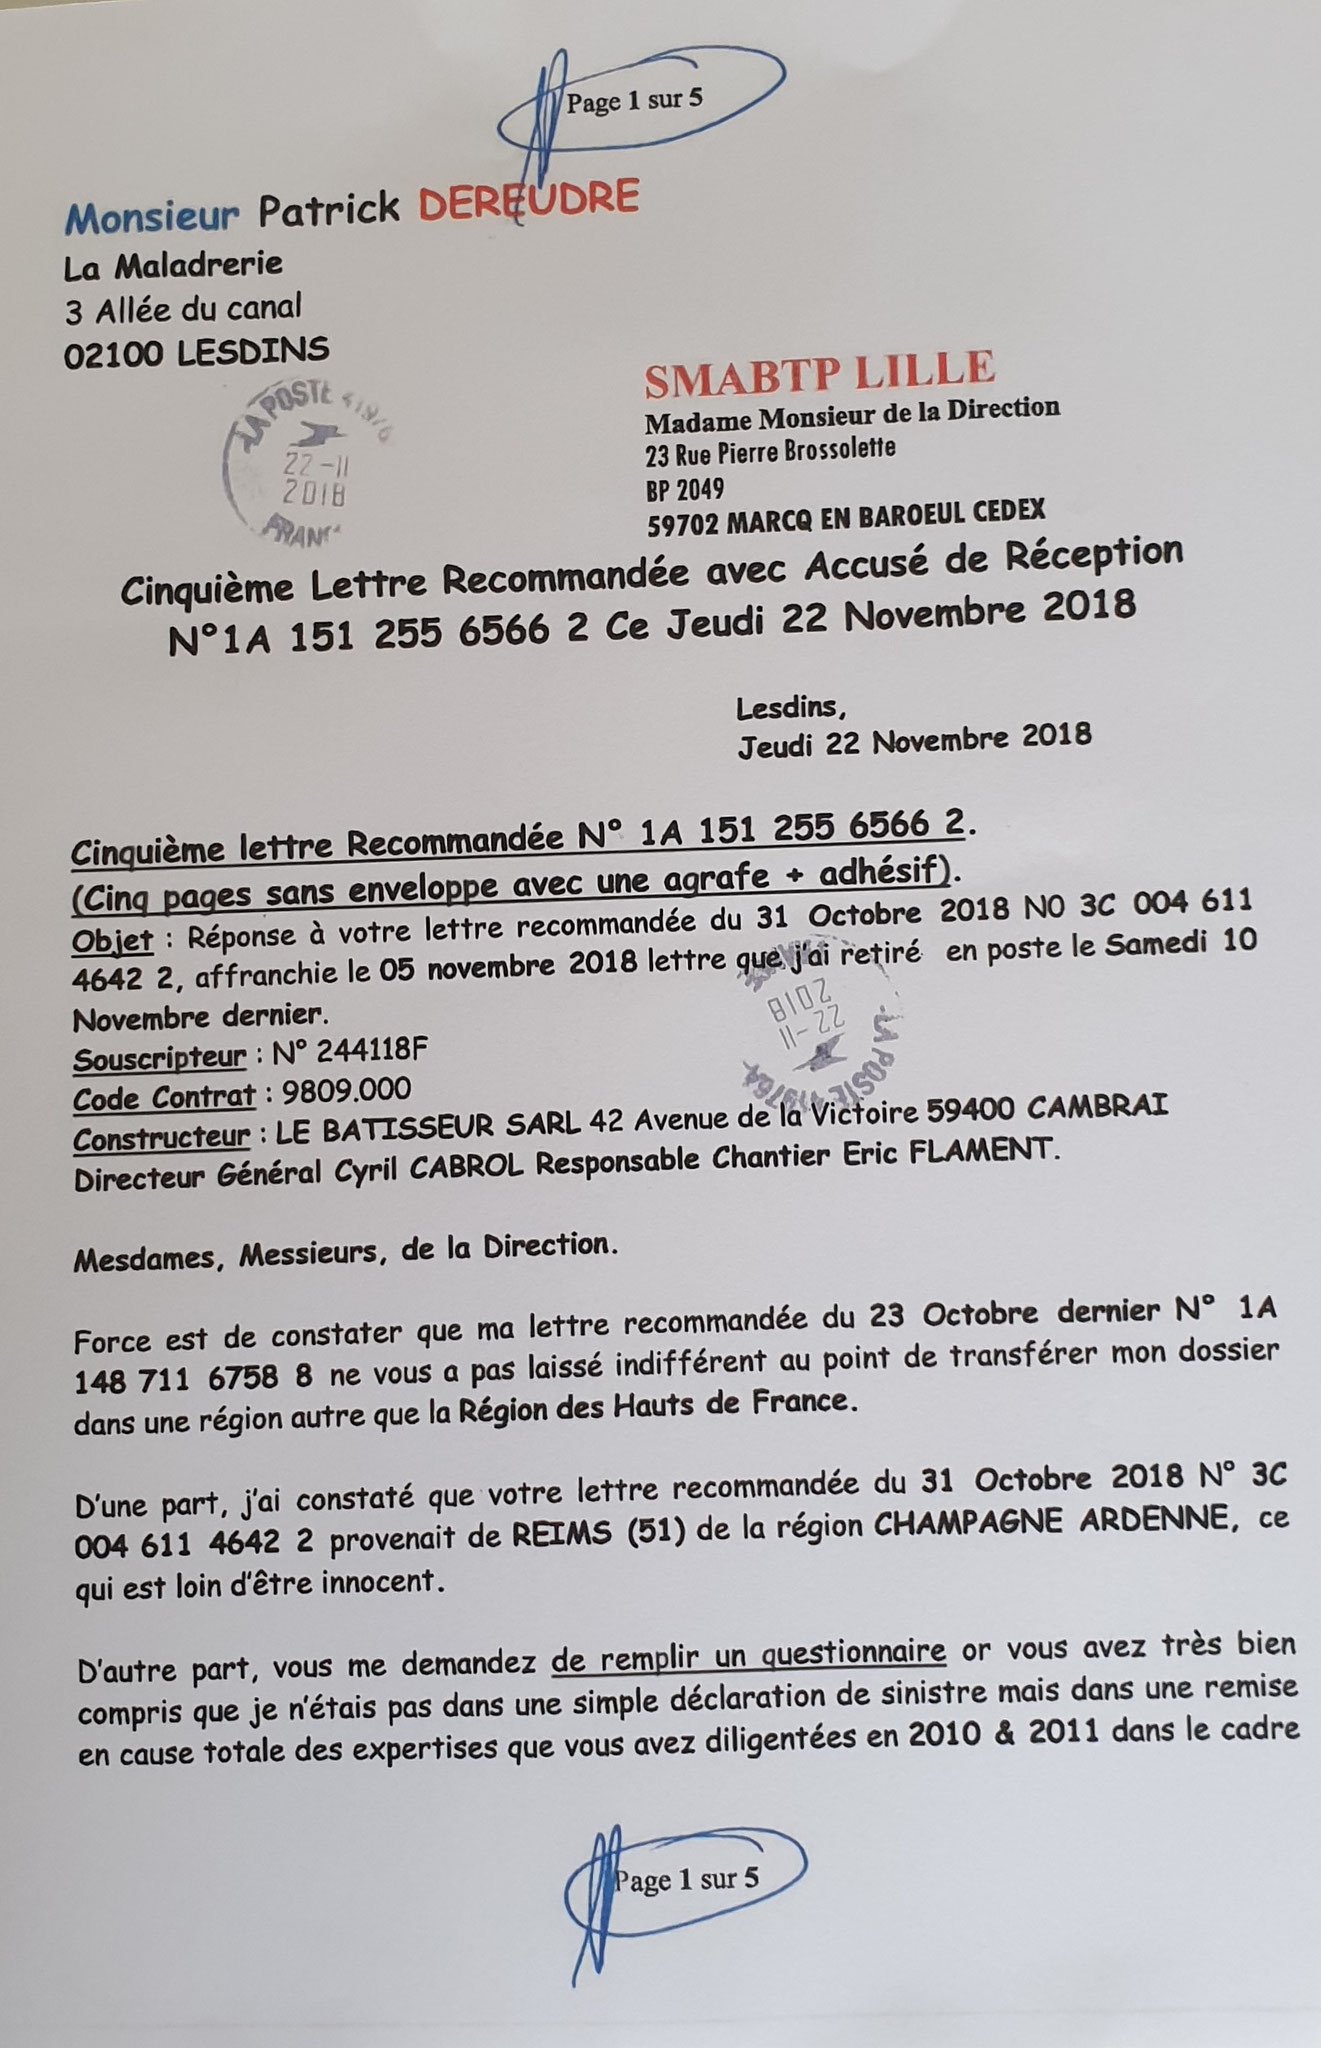 Le 22 Novembre 2018 j'adresse une cinquième LRAR N0 1A 151 255 6566 2 à SMABTP (Cinq pages) www.jenesuispasunchien.fr www.jesuisvictime.fr www.jesuispatrick.fr PARJURE & CORRUPTION